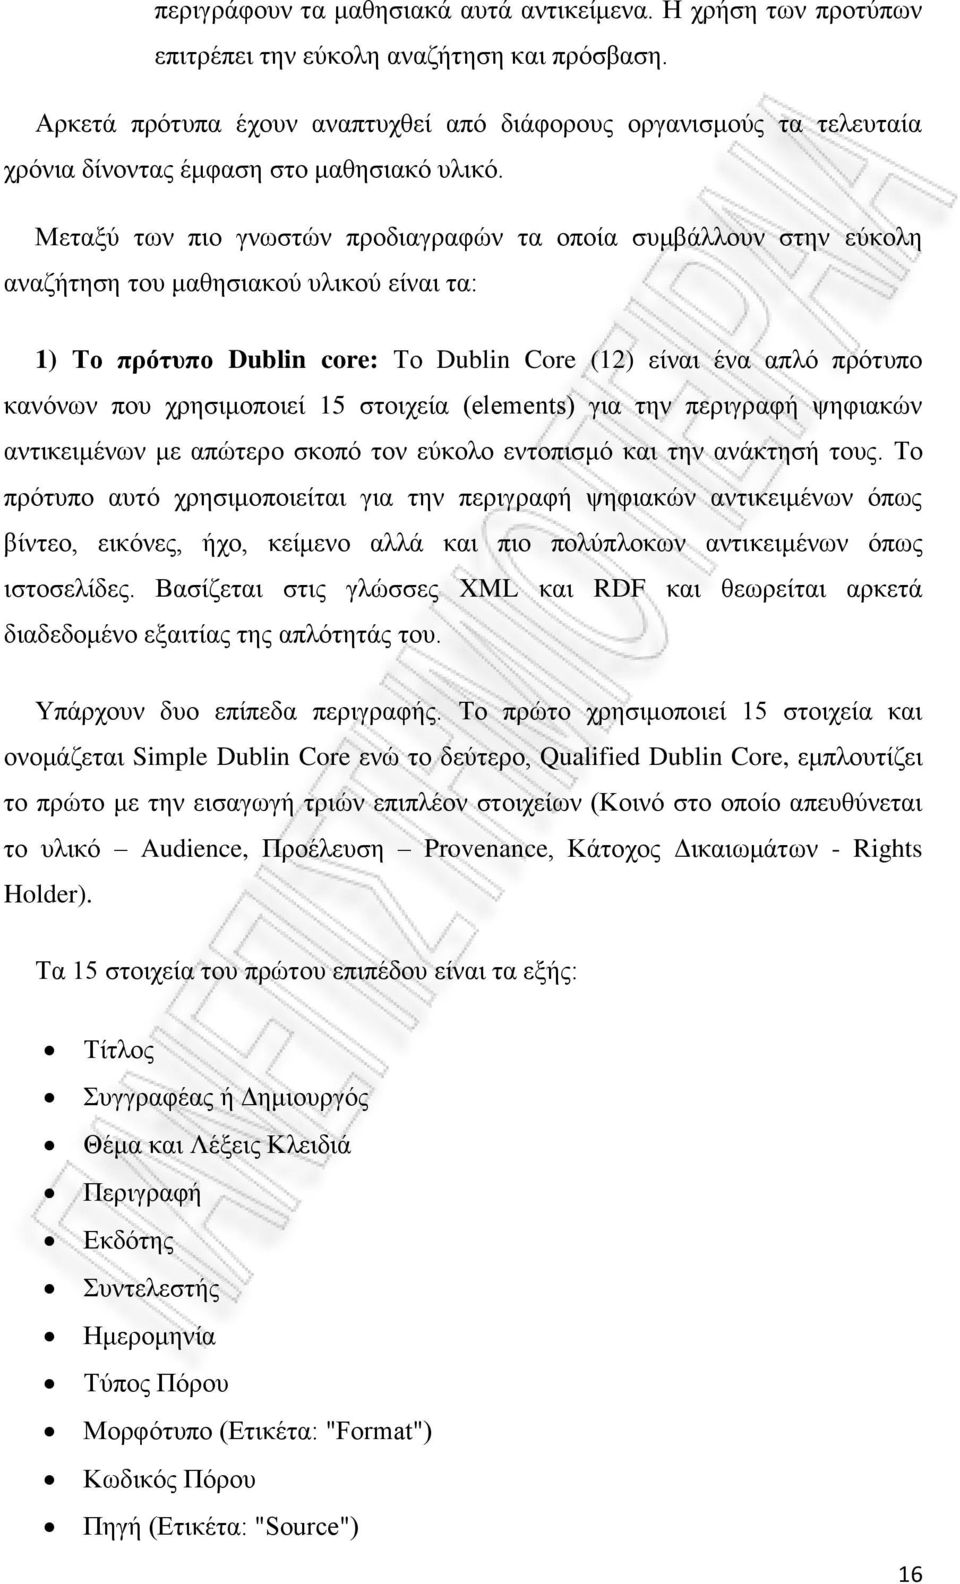 Μεταξύ των πιο γνωστών προδιαγραφών τα οποία συμβάλλουν στην εύκολη αναζήτηση του μαθησιακού υλικού είναι τα: 1) Το πρότυπο Dublin core: Το Dublin Core (12) είναι ένα απλό πρότυπο κανόνων που